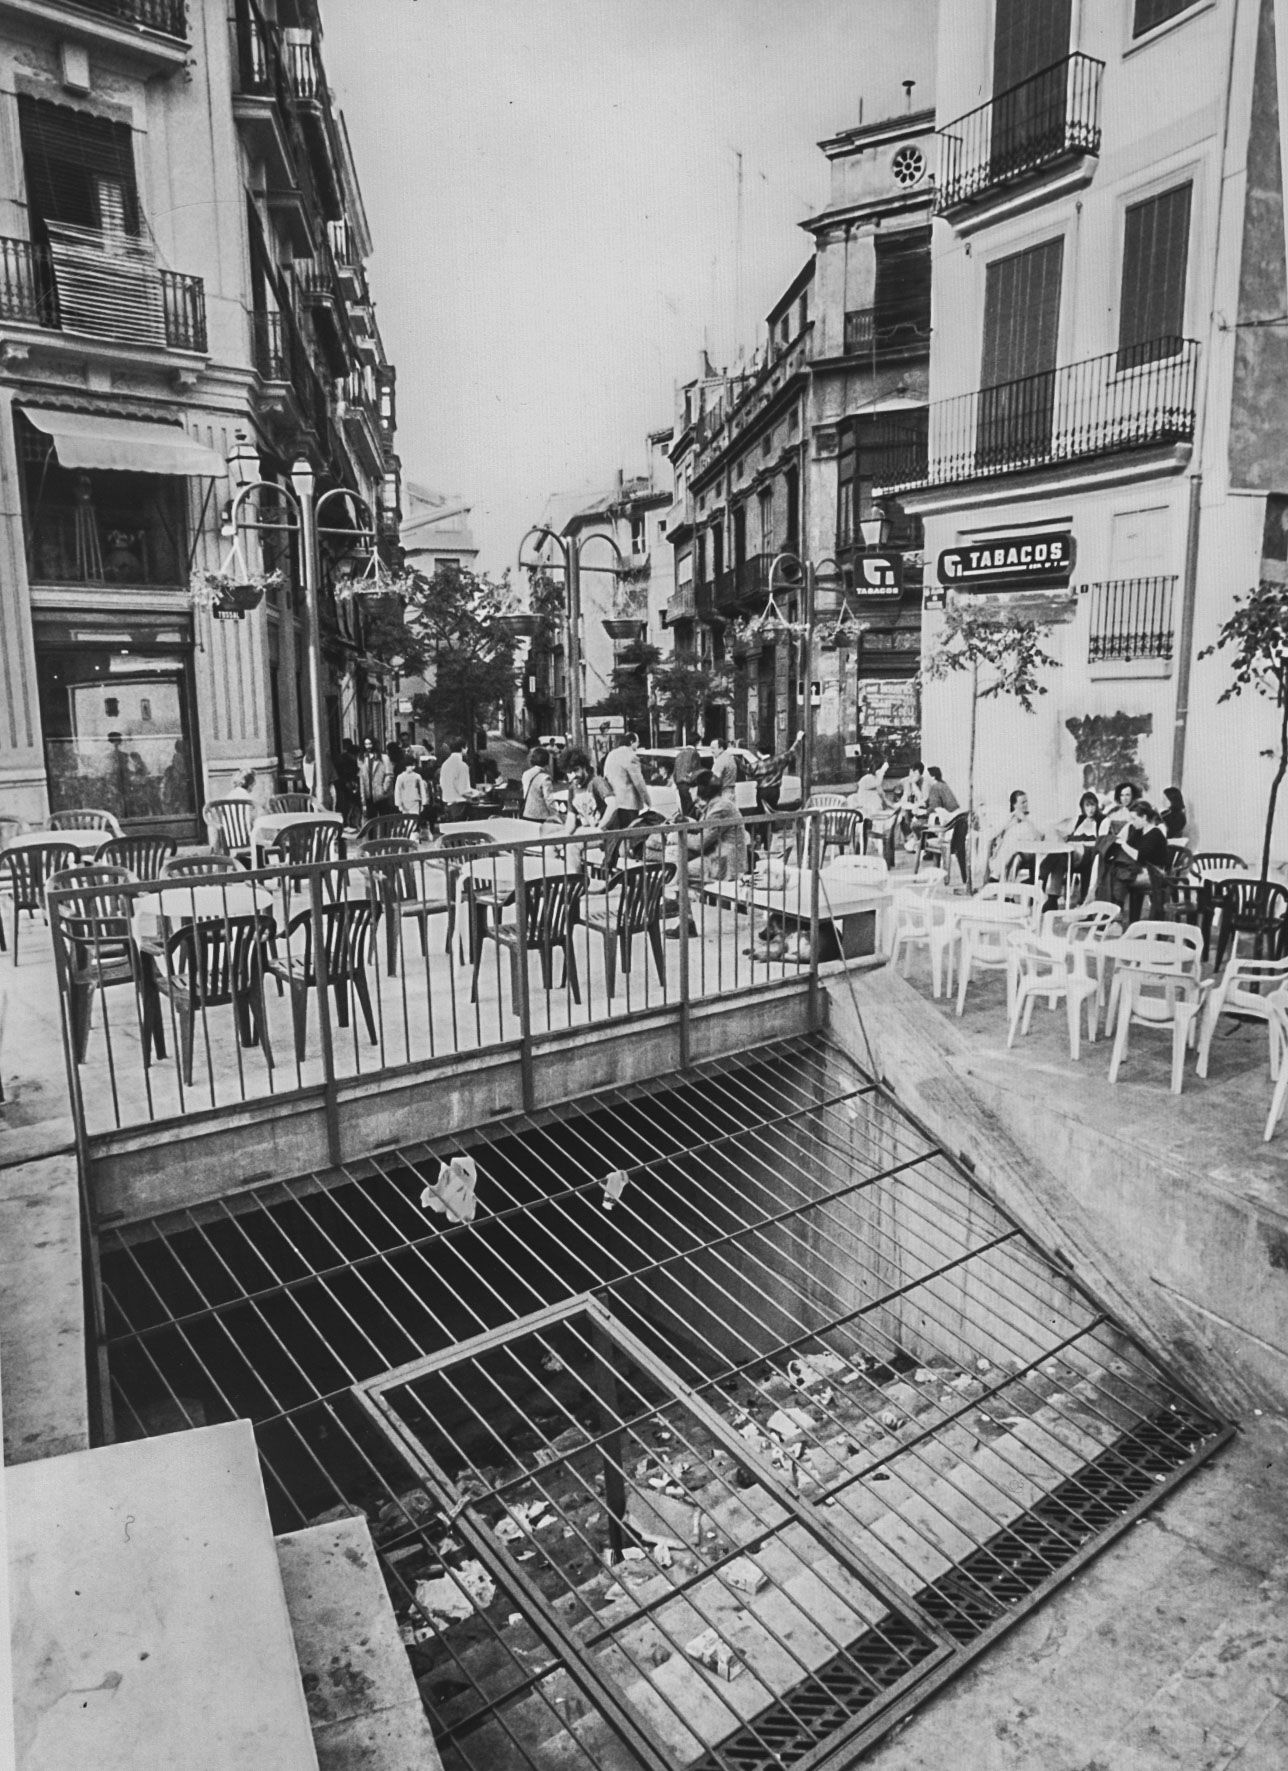 Fotos de la València desaparecida: El Carmen de los 80